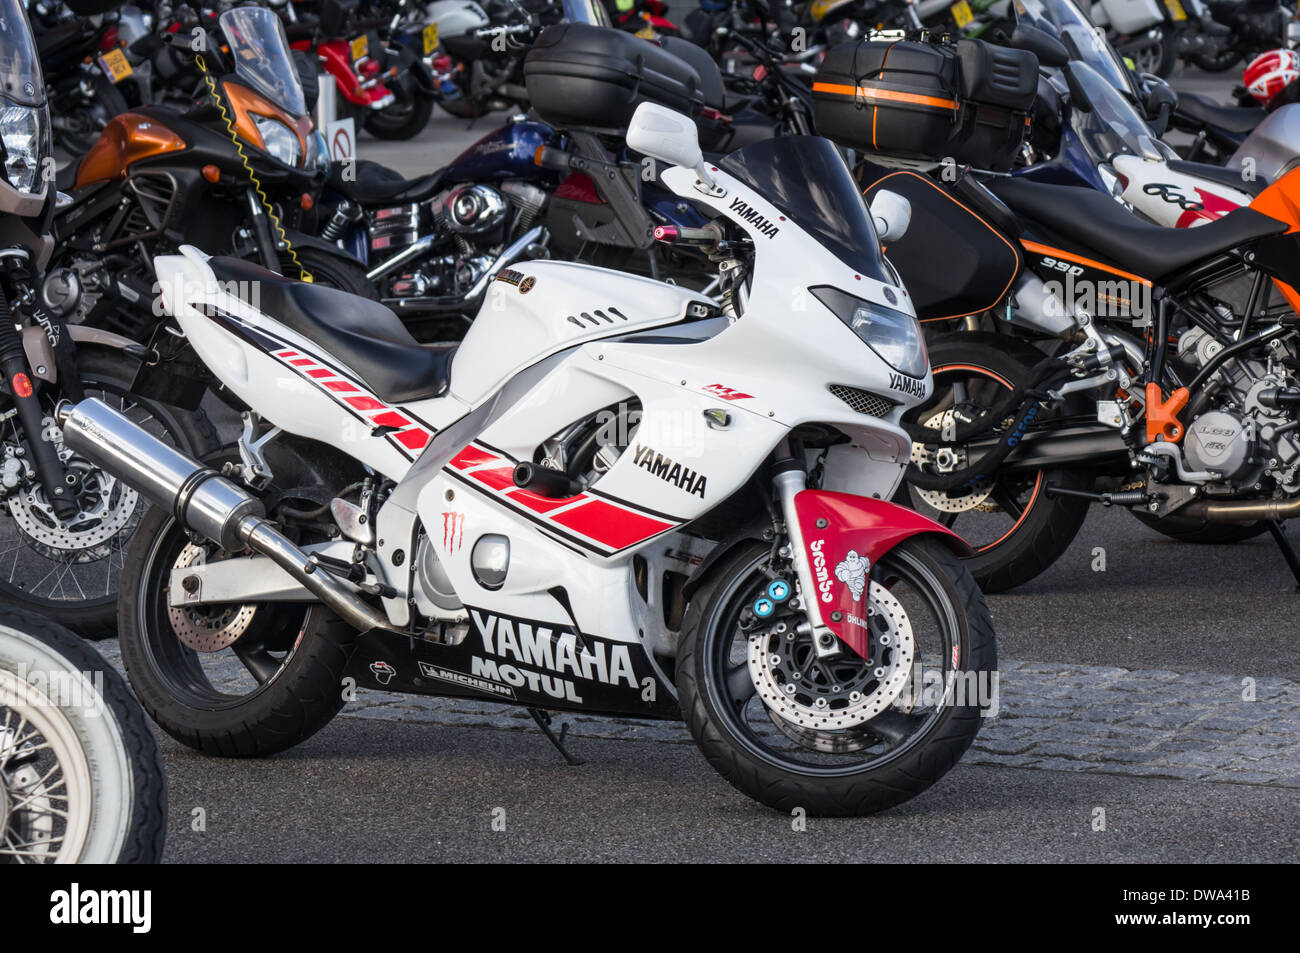 Yamaha Motorrad geparkt mit anderen Sportarten und klassische Motorräder, London England Vereinigtes Königreich Großbritannien Stockfoto